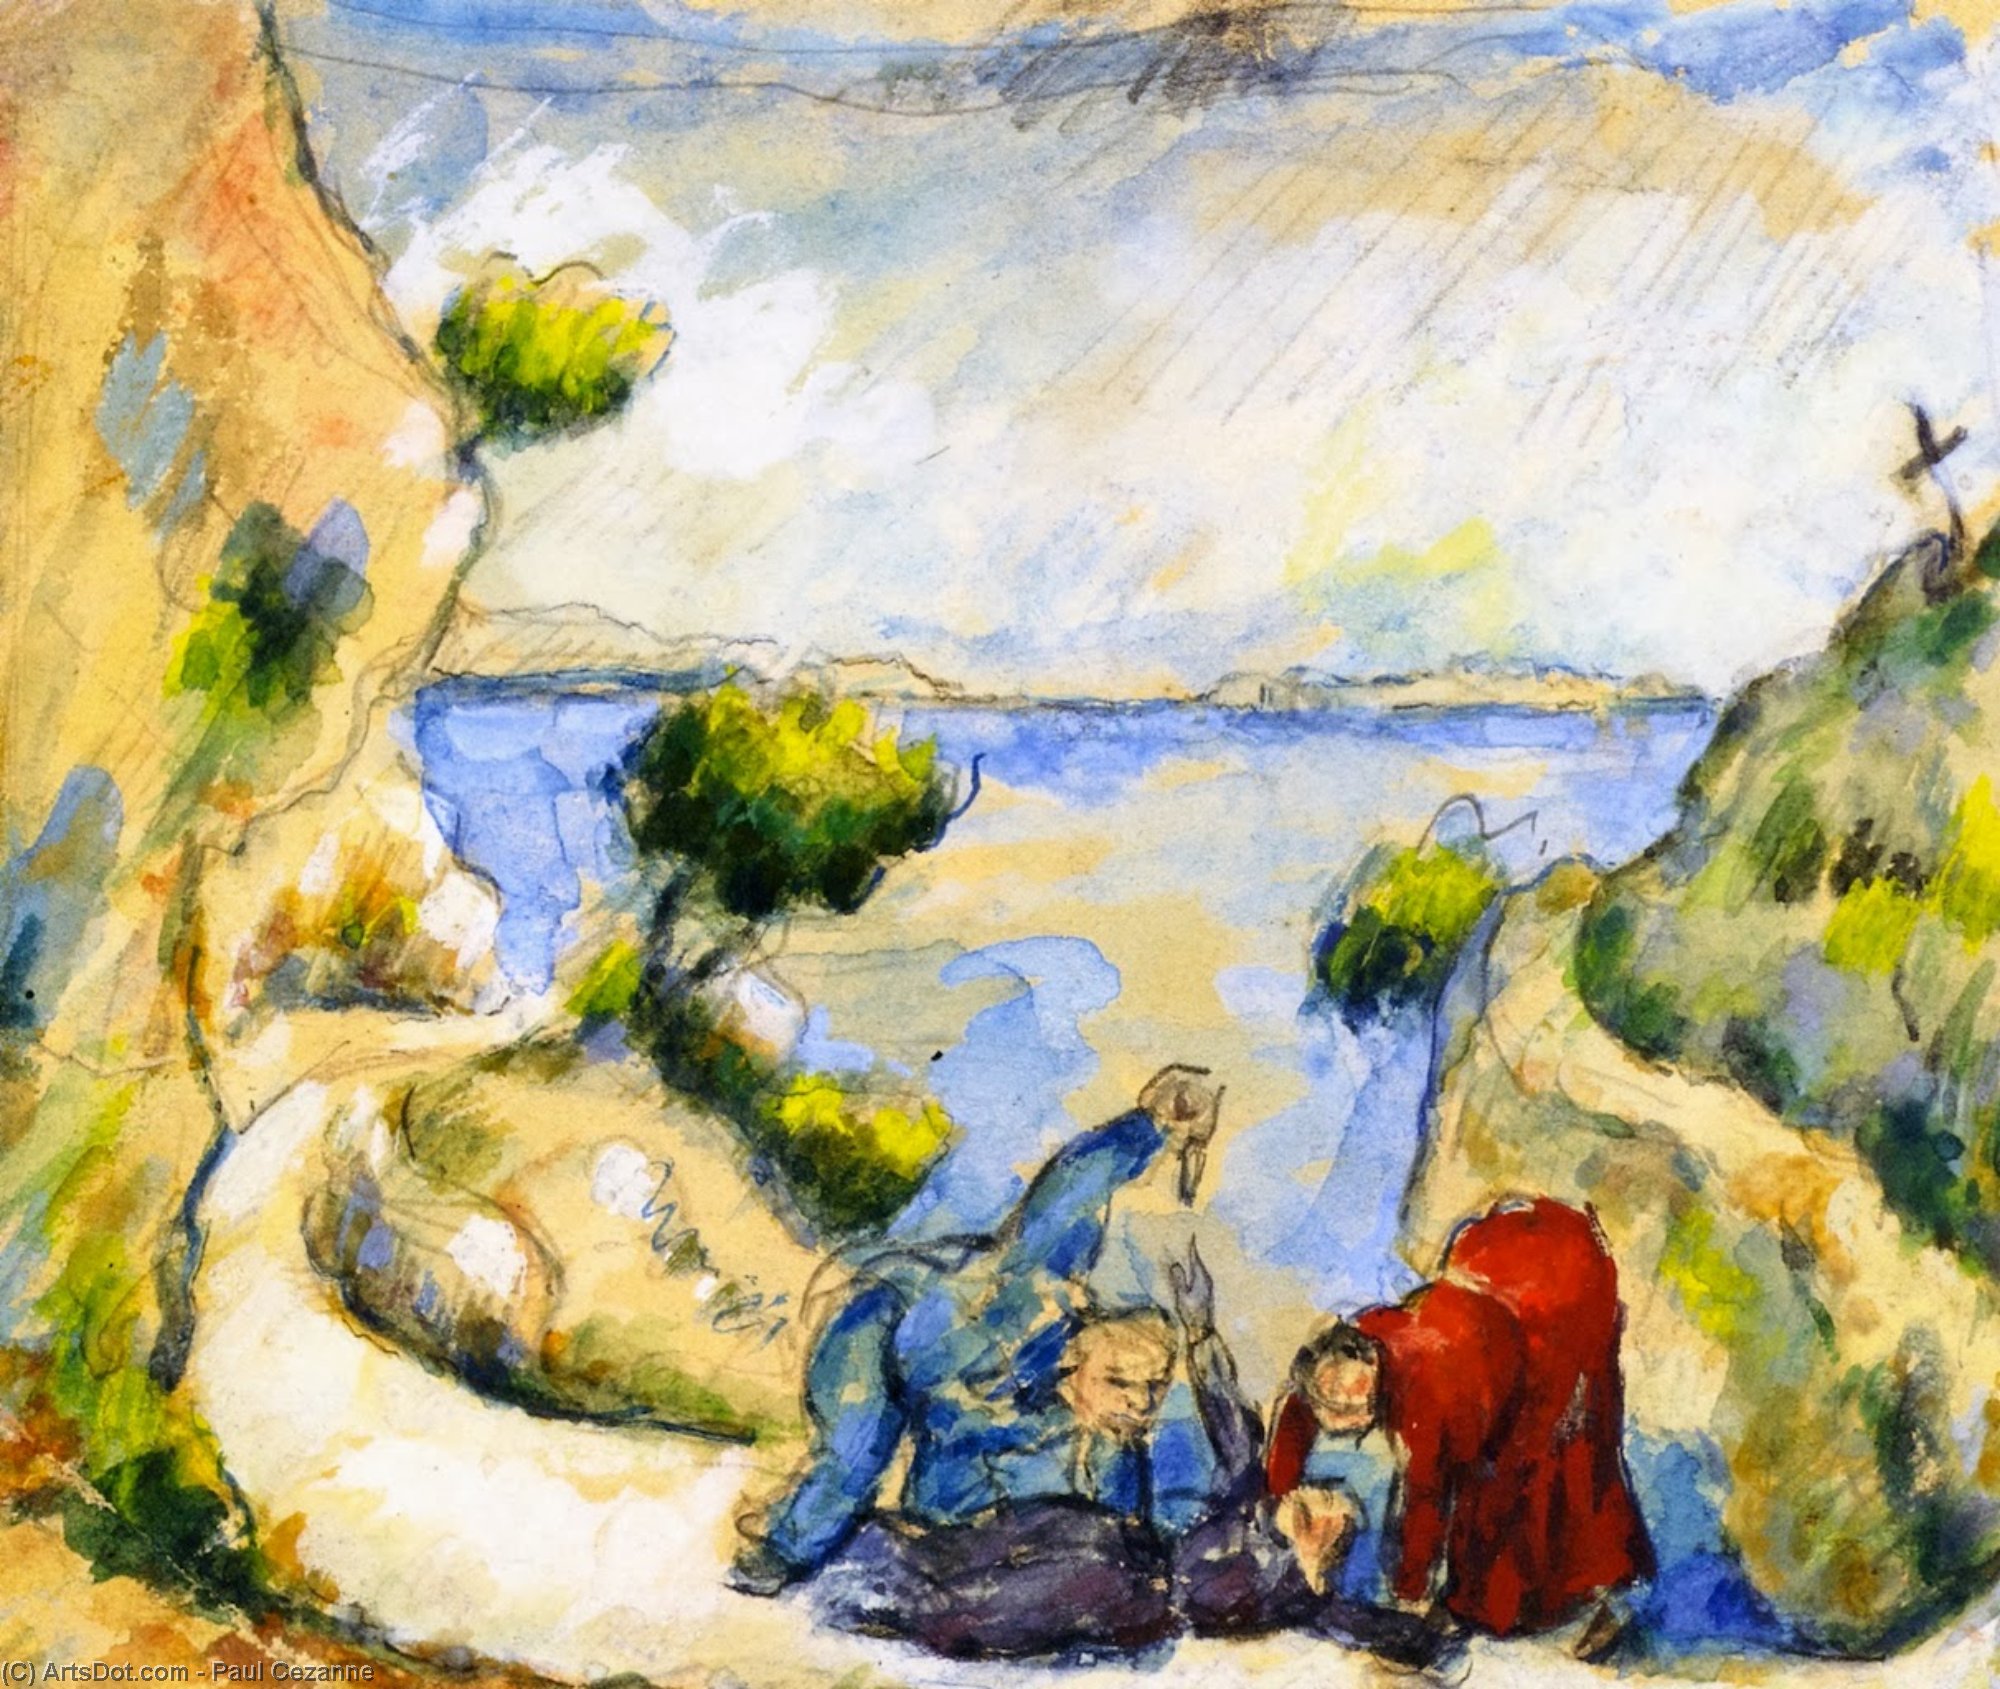 WikiOO.org - Encyclopedia of Fine Arts - Malba, Artwork Paul Cezanne - Murder in the Ravine